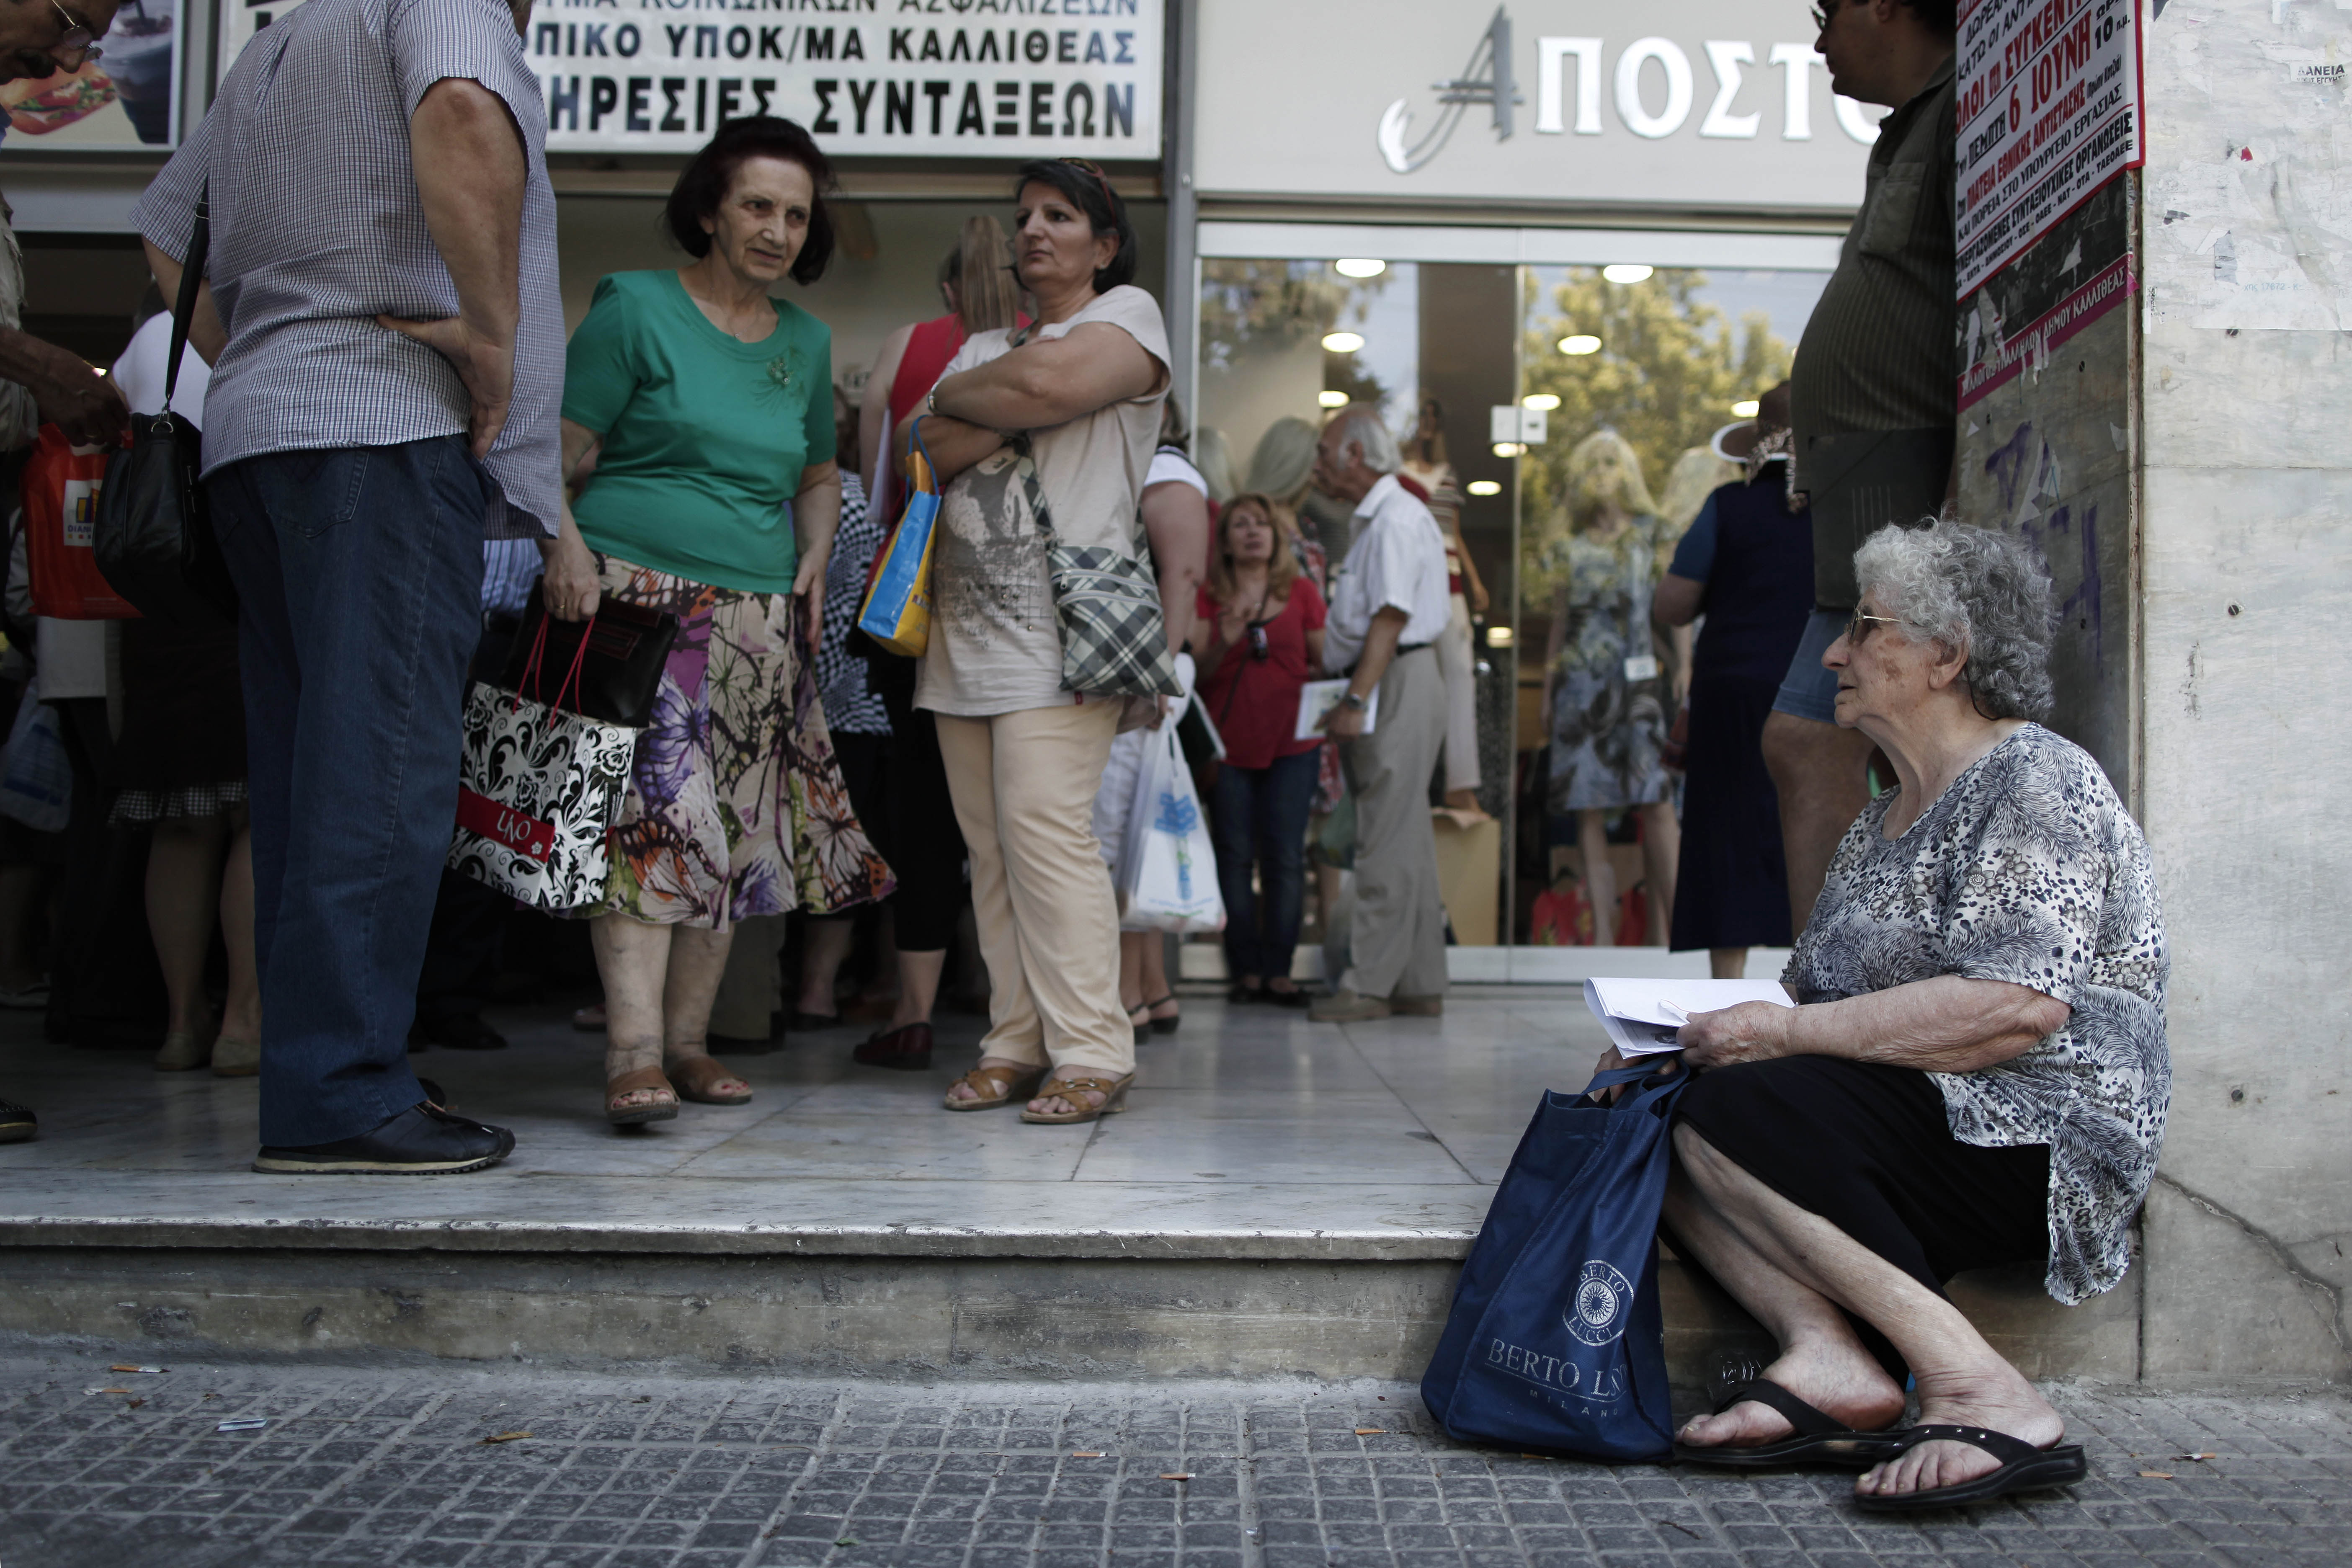 Στα €907 η μέση κύρια και επικουρική σύνταξη στην Ελλάδα